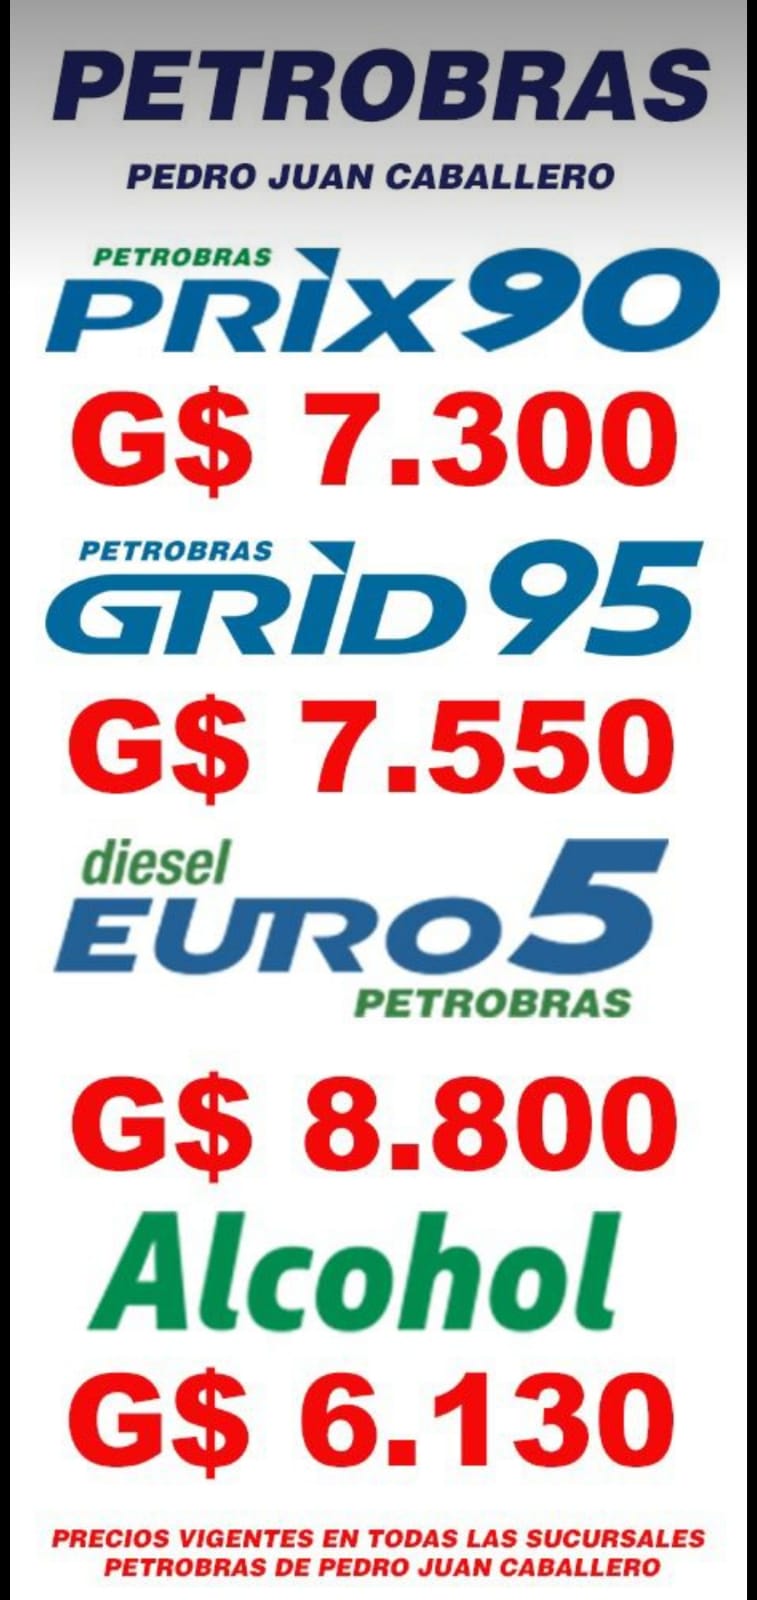 Apartir de hoy Petrobras Pedro Juan Caballero igualó los precios de nafta y alcohol con Ponta Porã